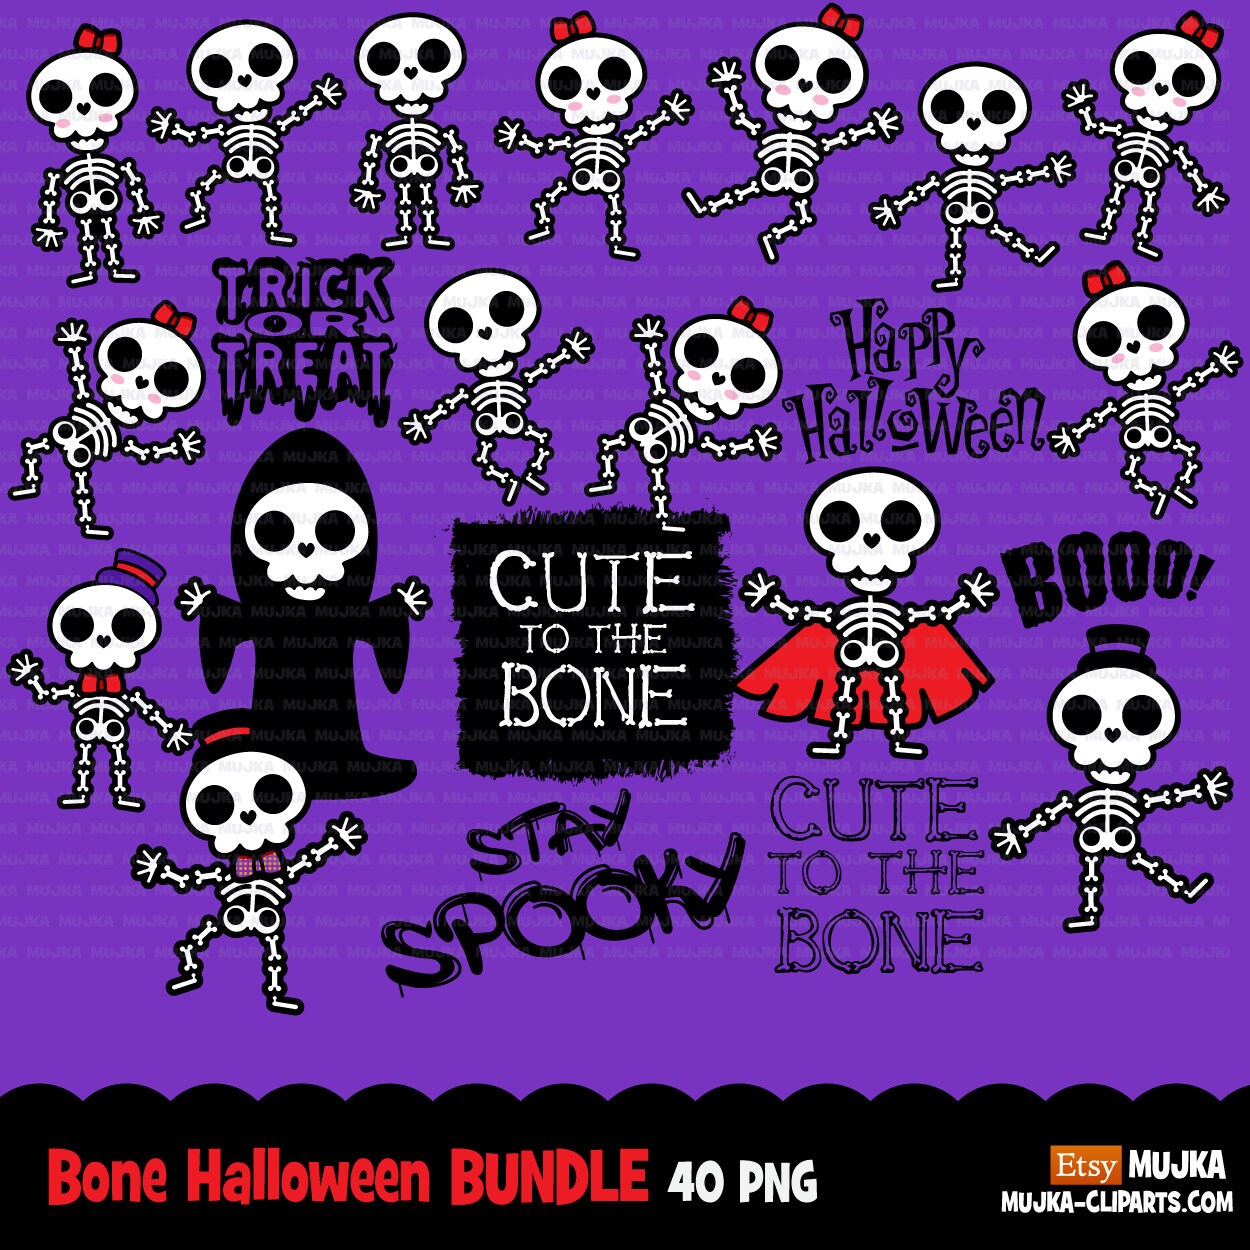 Paquete Skeleton Png, paquete de Halloween, diseños de sublimación de la familia de calaveras de azúcar, descarga digital, imágenes prediseñadas de Halloween, truco o trato png, boo